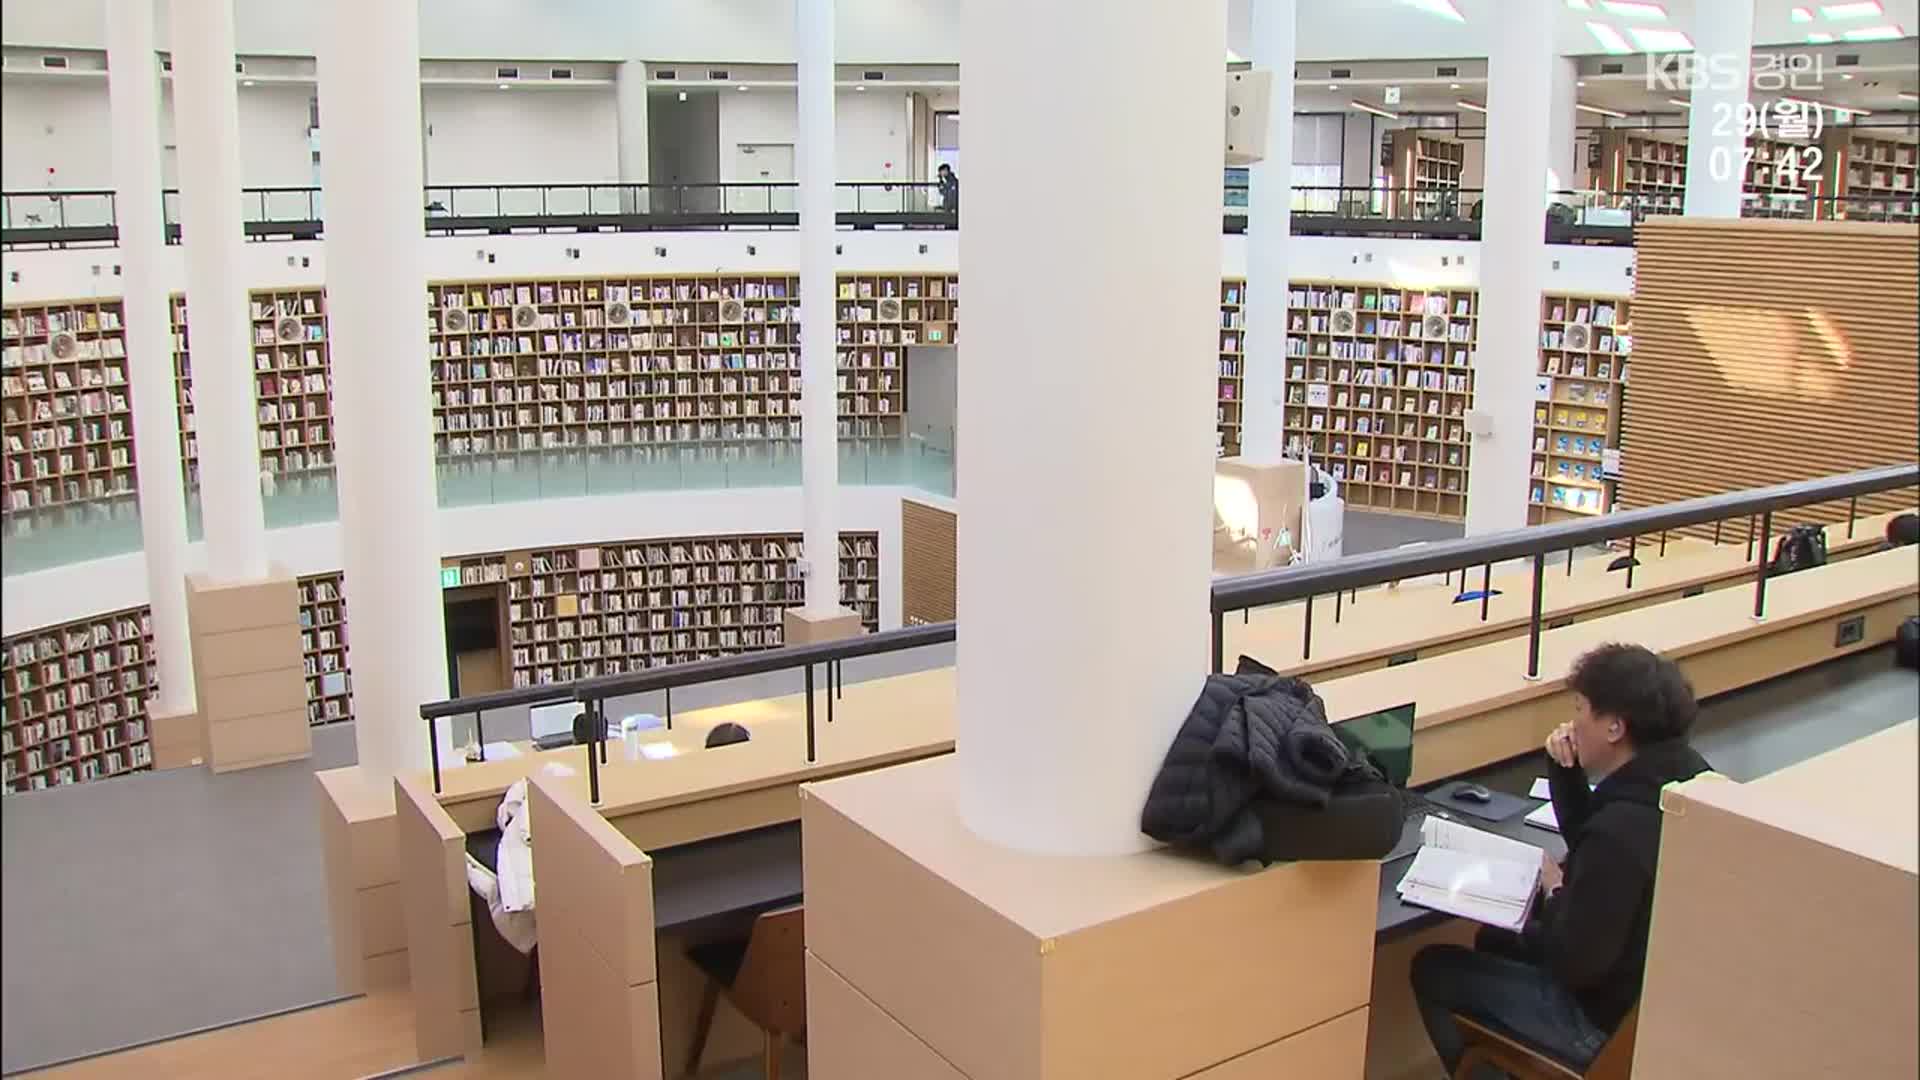 인구 3만에 방문객은 5만…인제 도서관의 기적